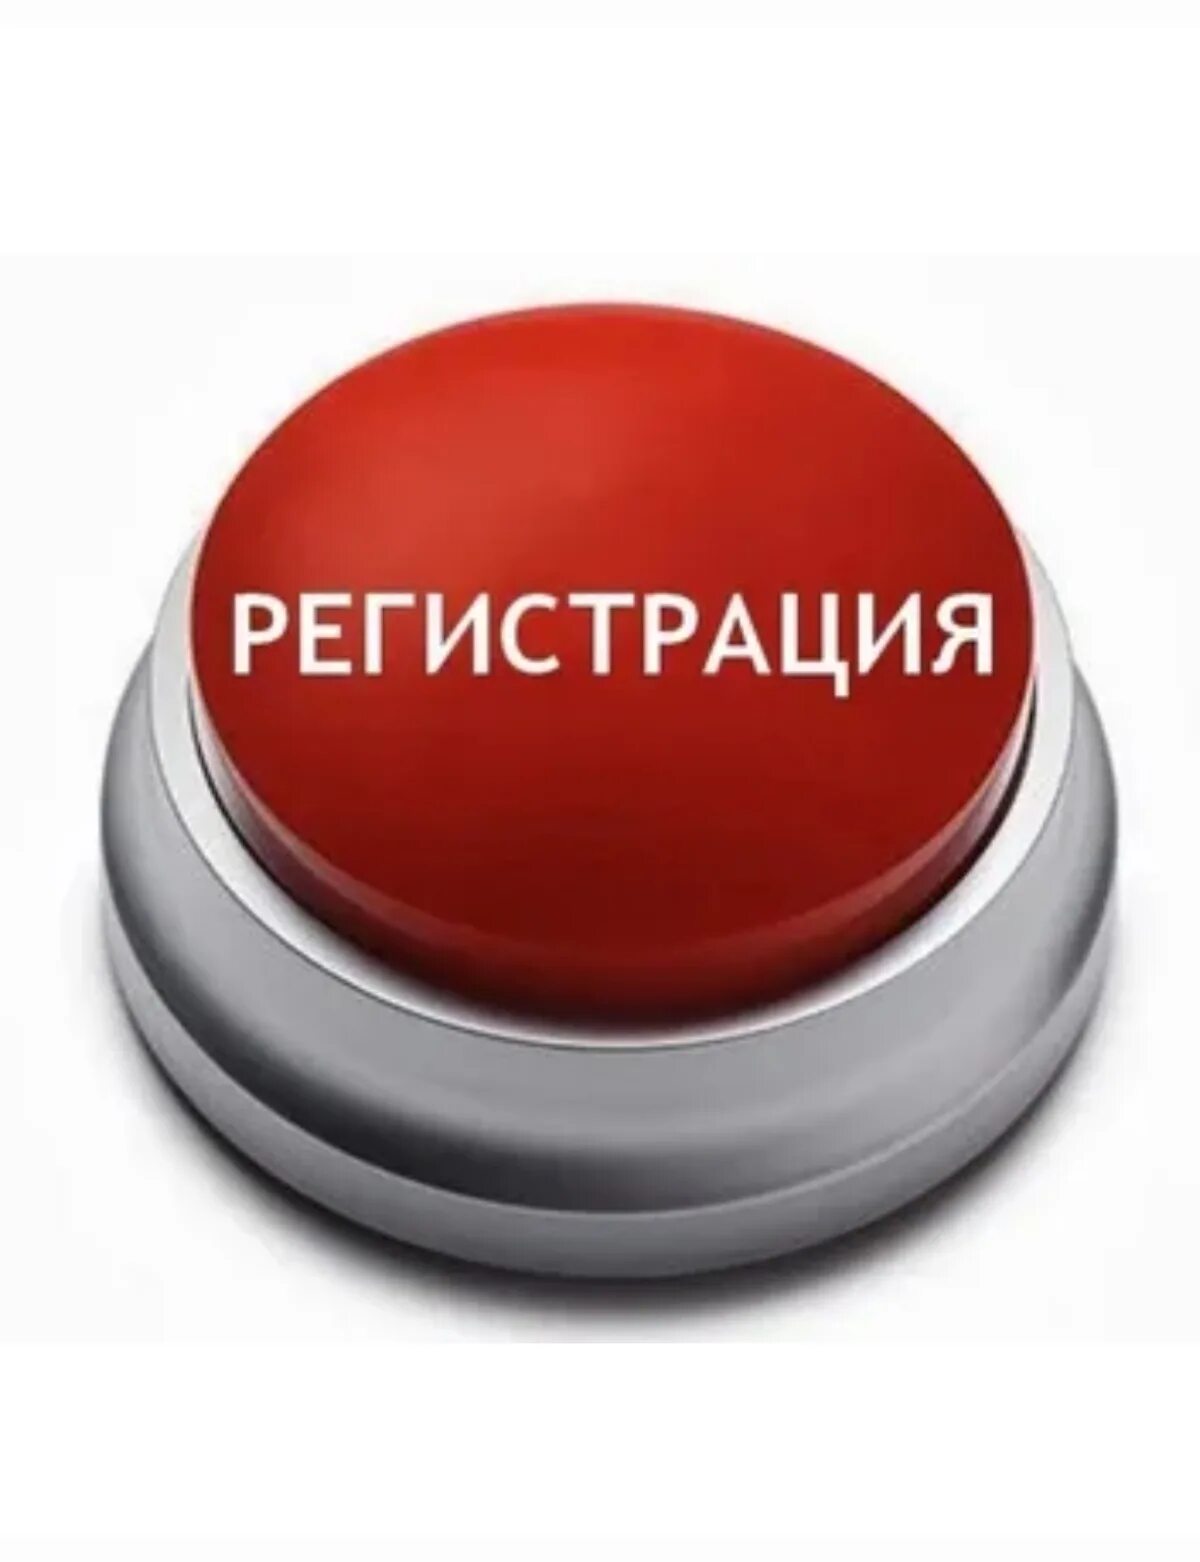 После красной кнопки. Кнопка. Красная кнопка. Картинка жми на кнопку. Красная кнопка конец.